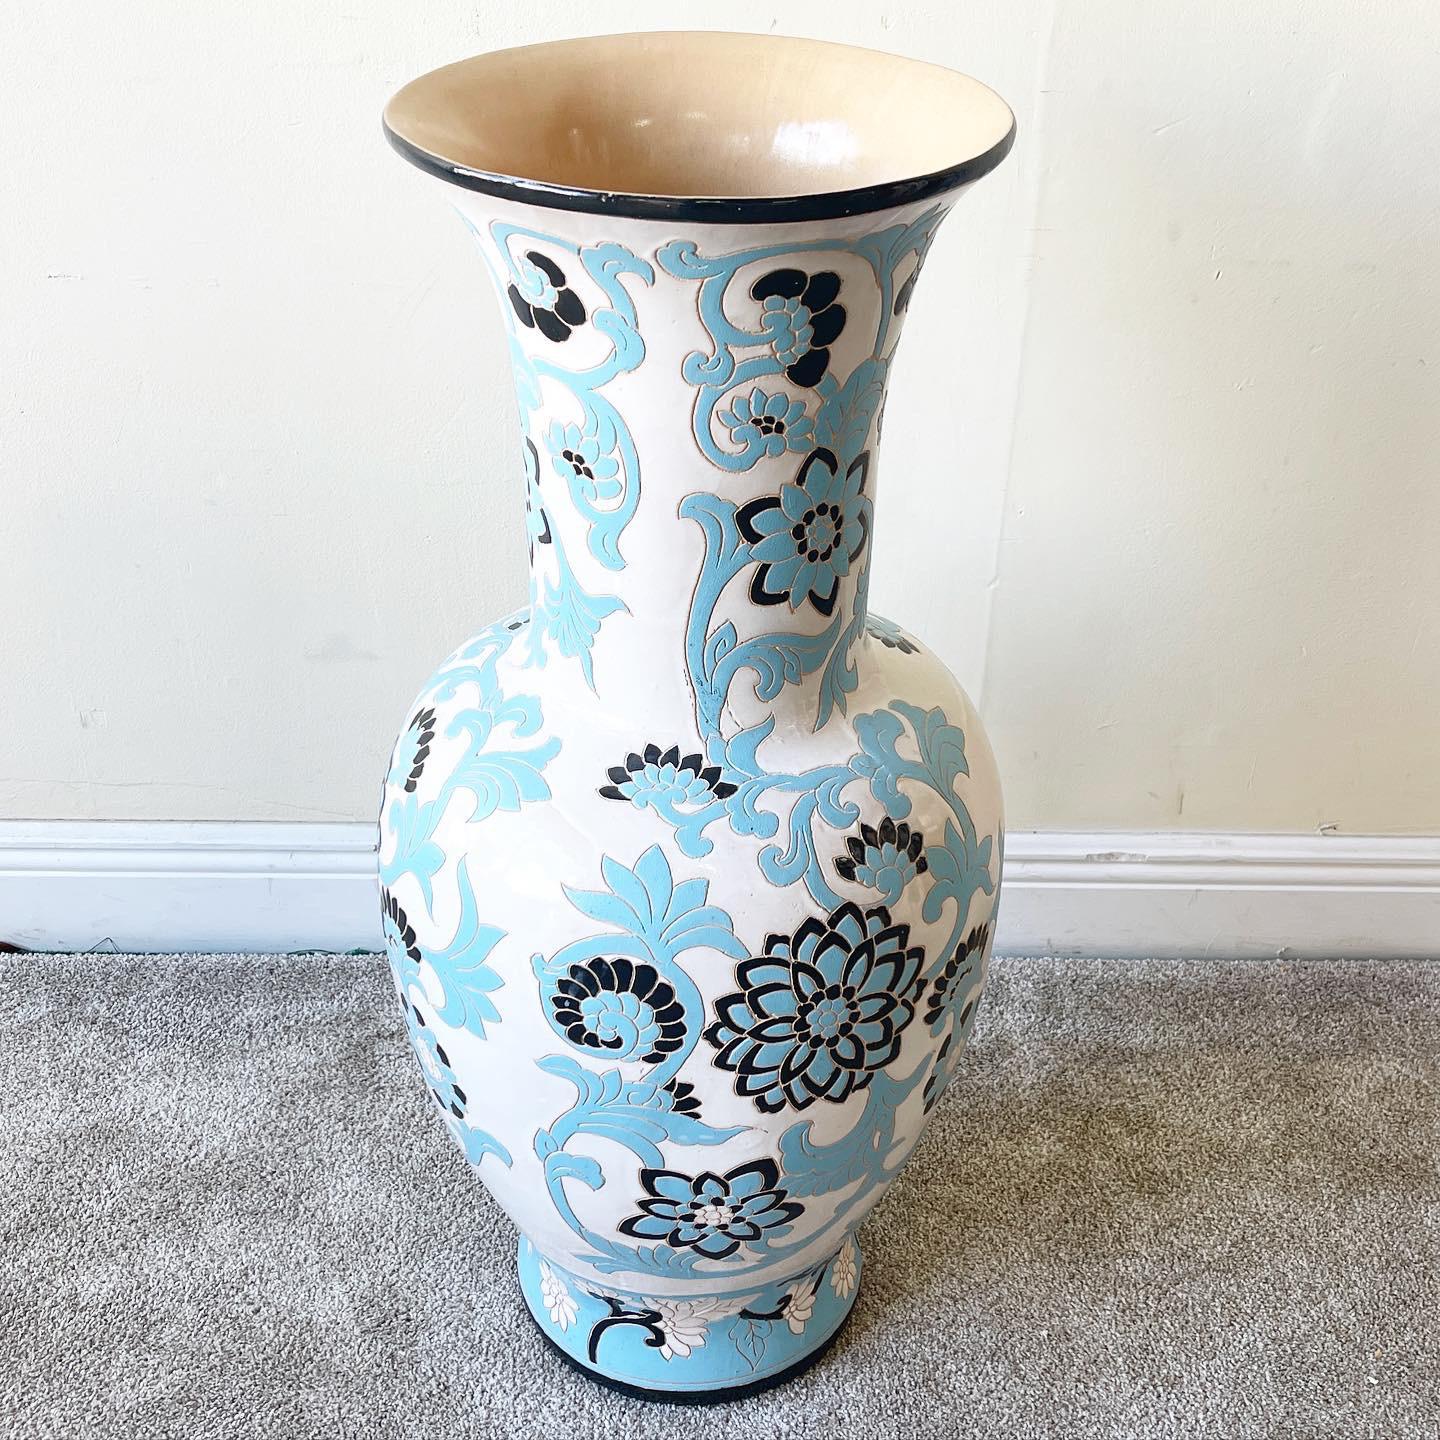 Incroyable vase de sol en poterie. Des fleurs de lotus bleues et noires brillantes jaillissent sur un fond blanc.
 